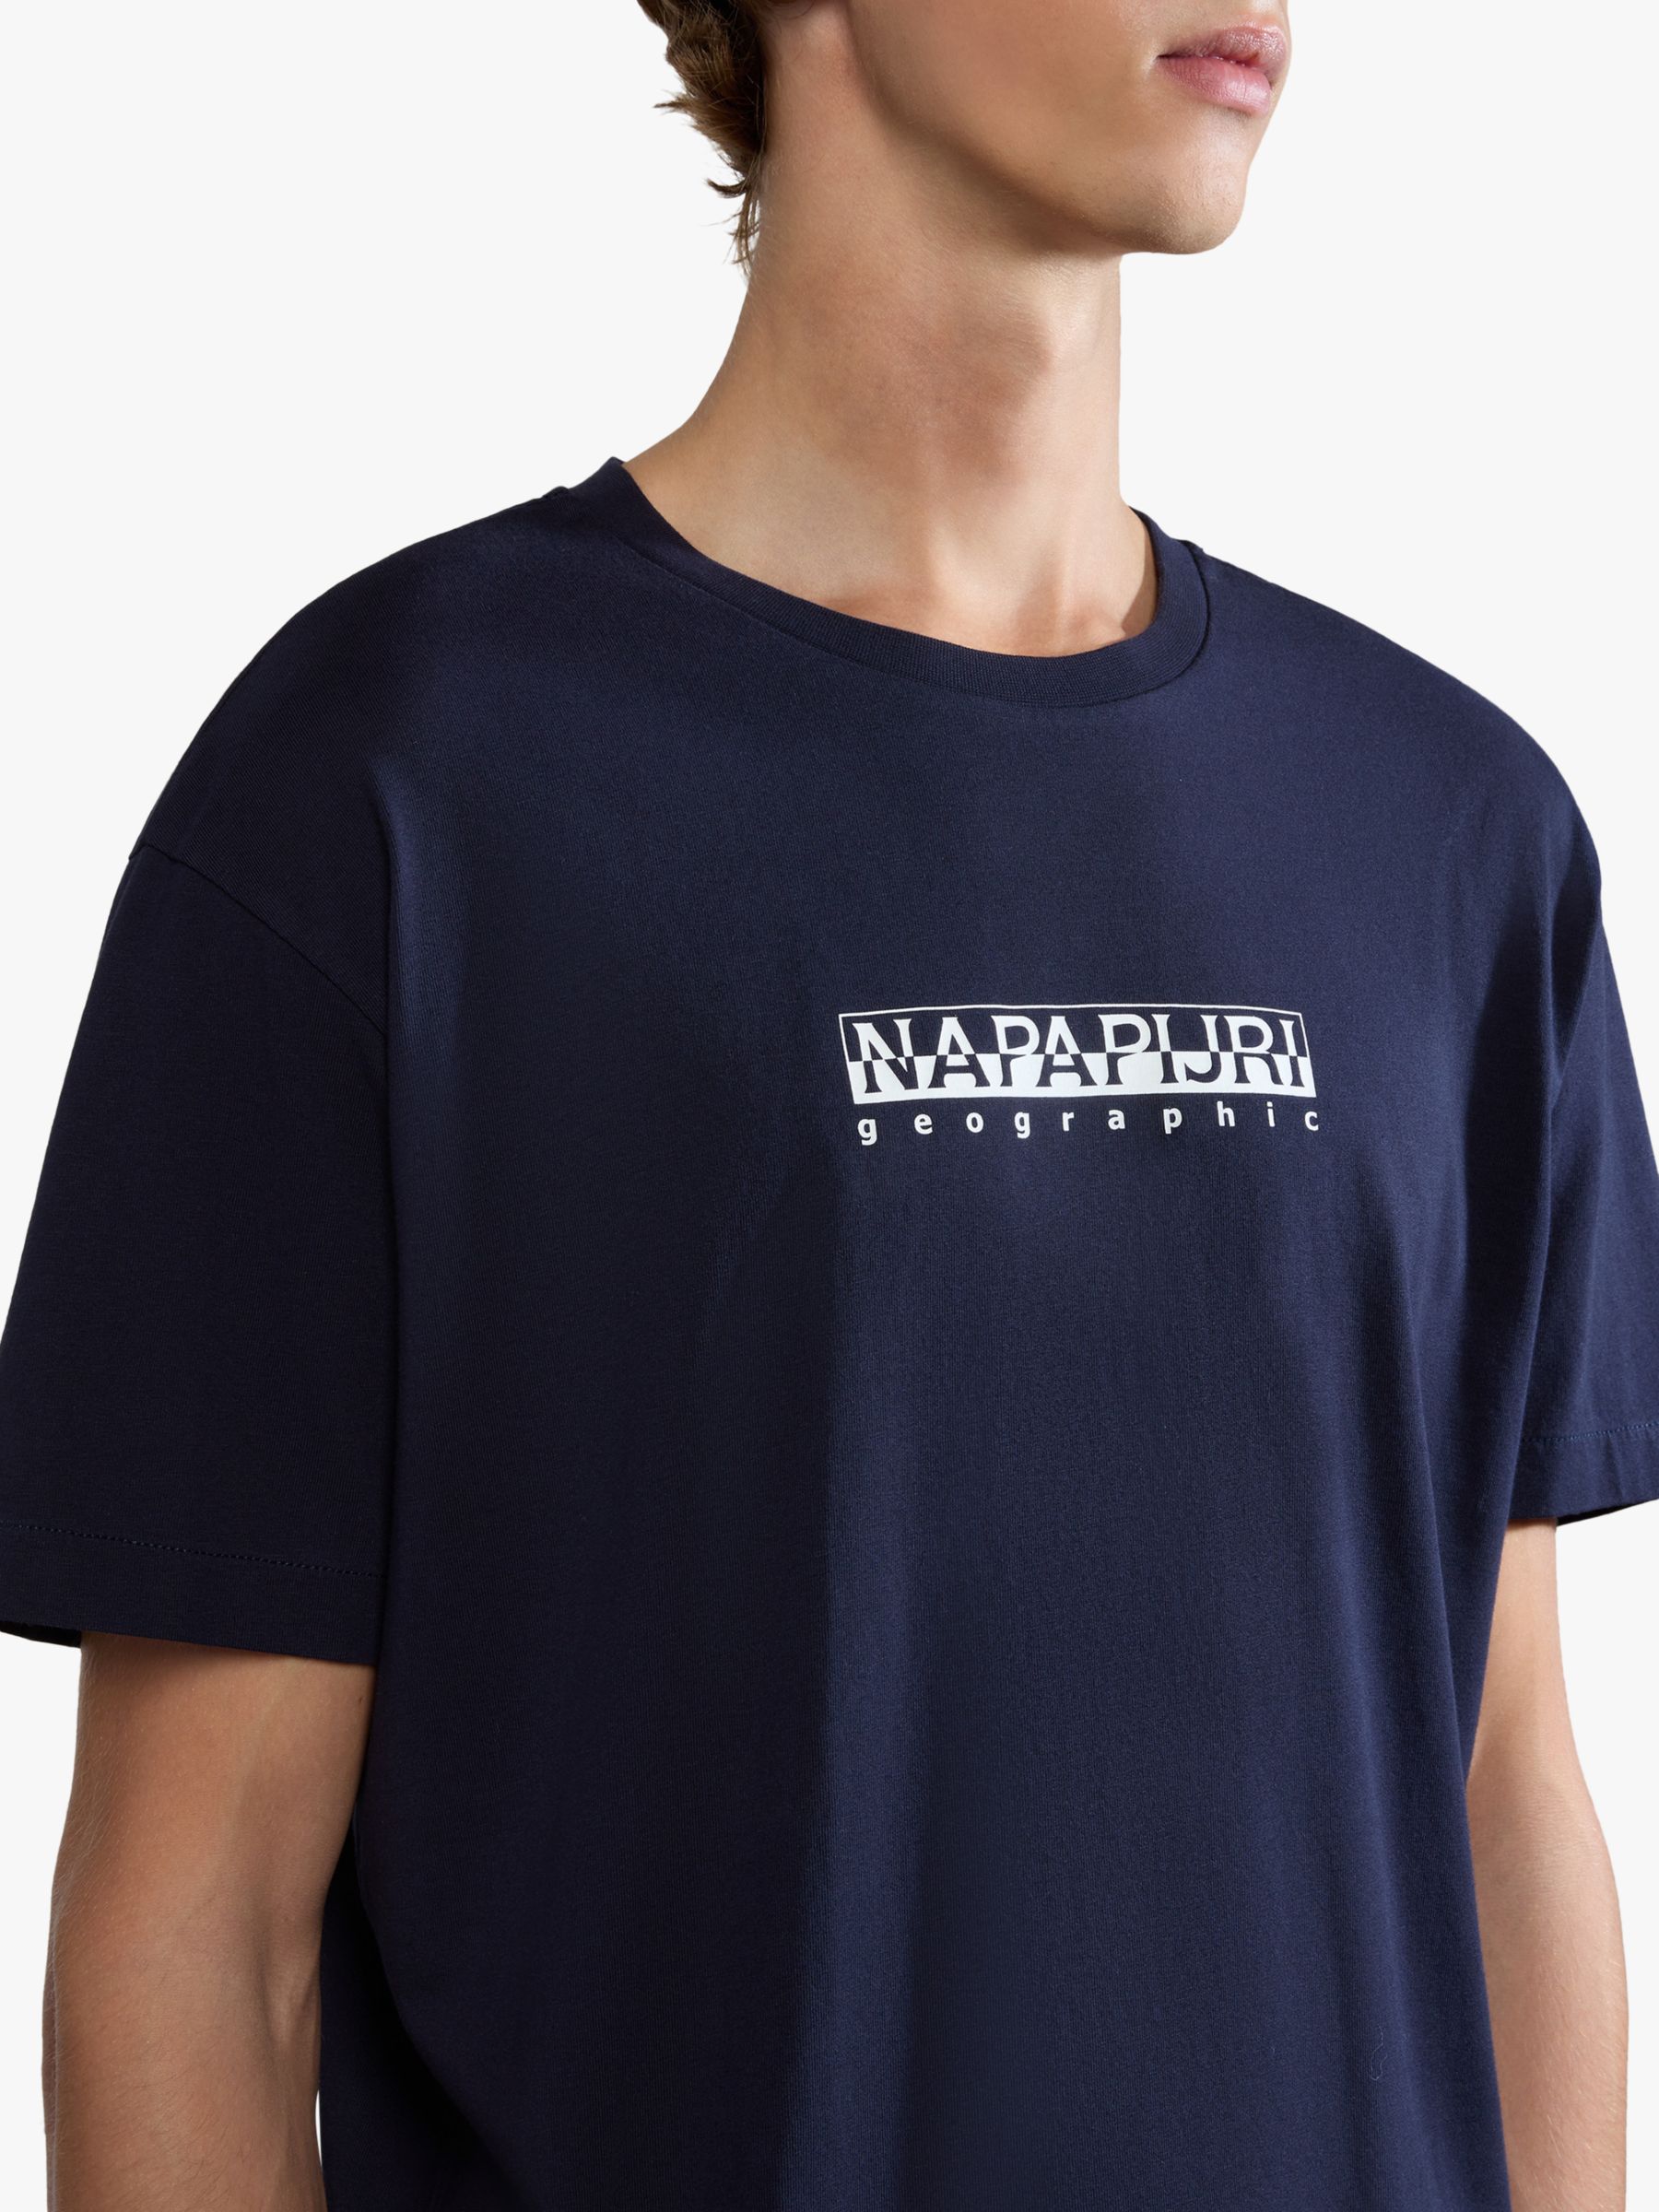 Napapijri Box Short Sleeve T-Shirt, Marine, M